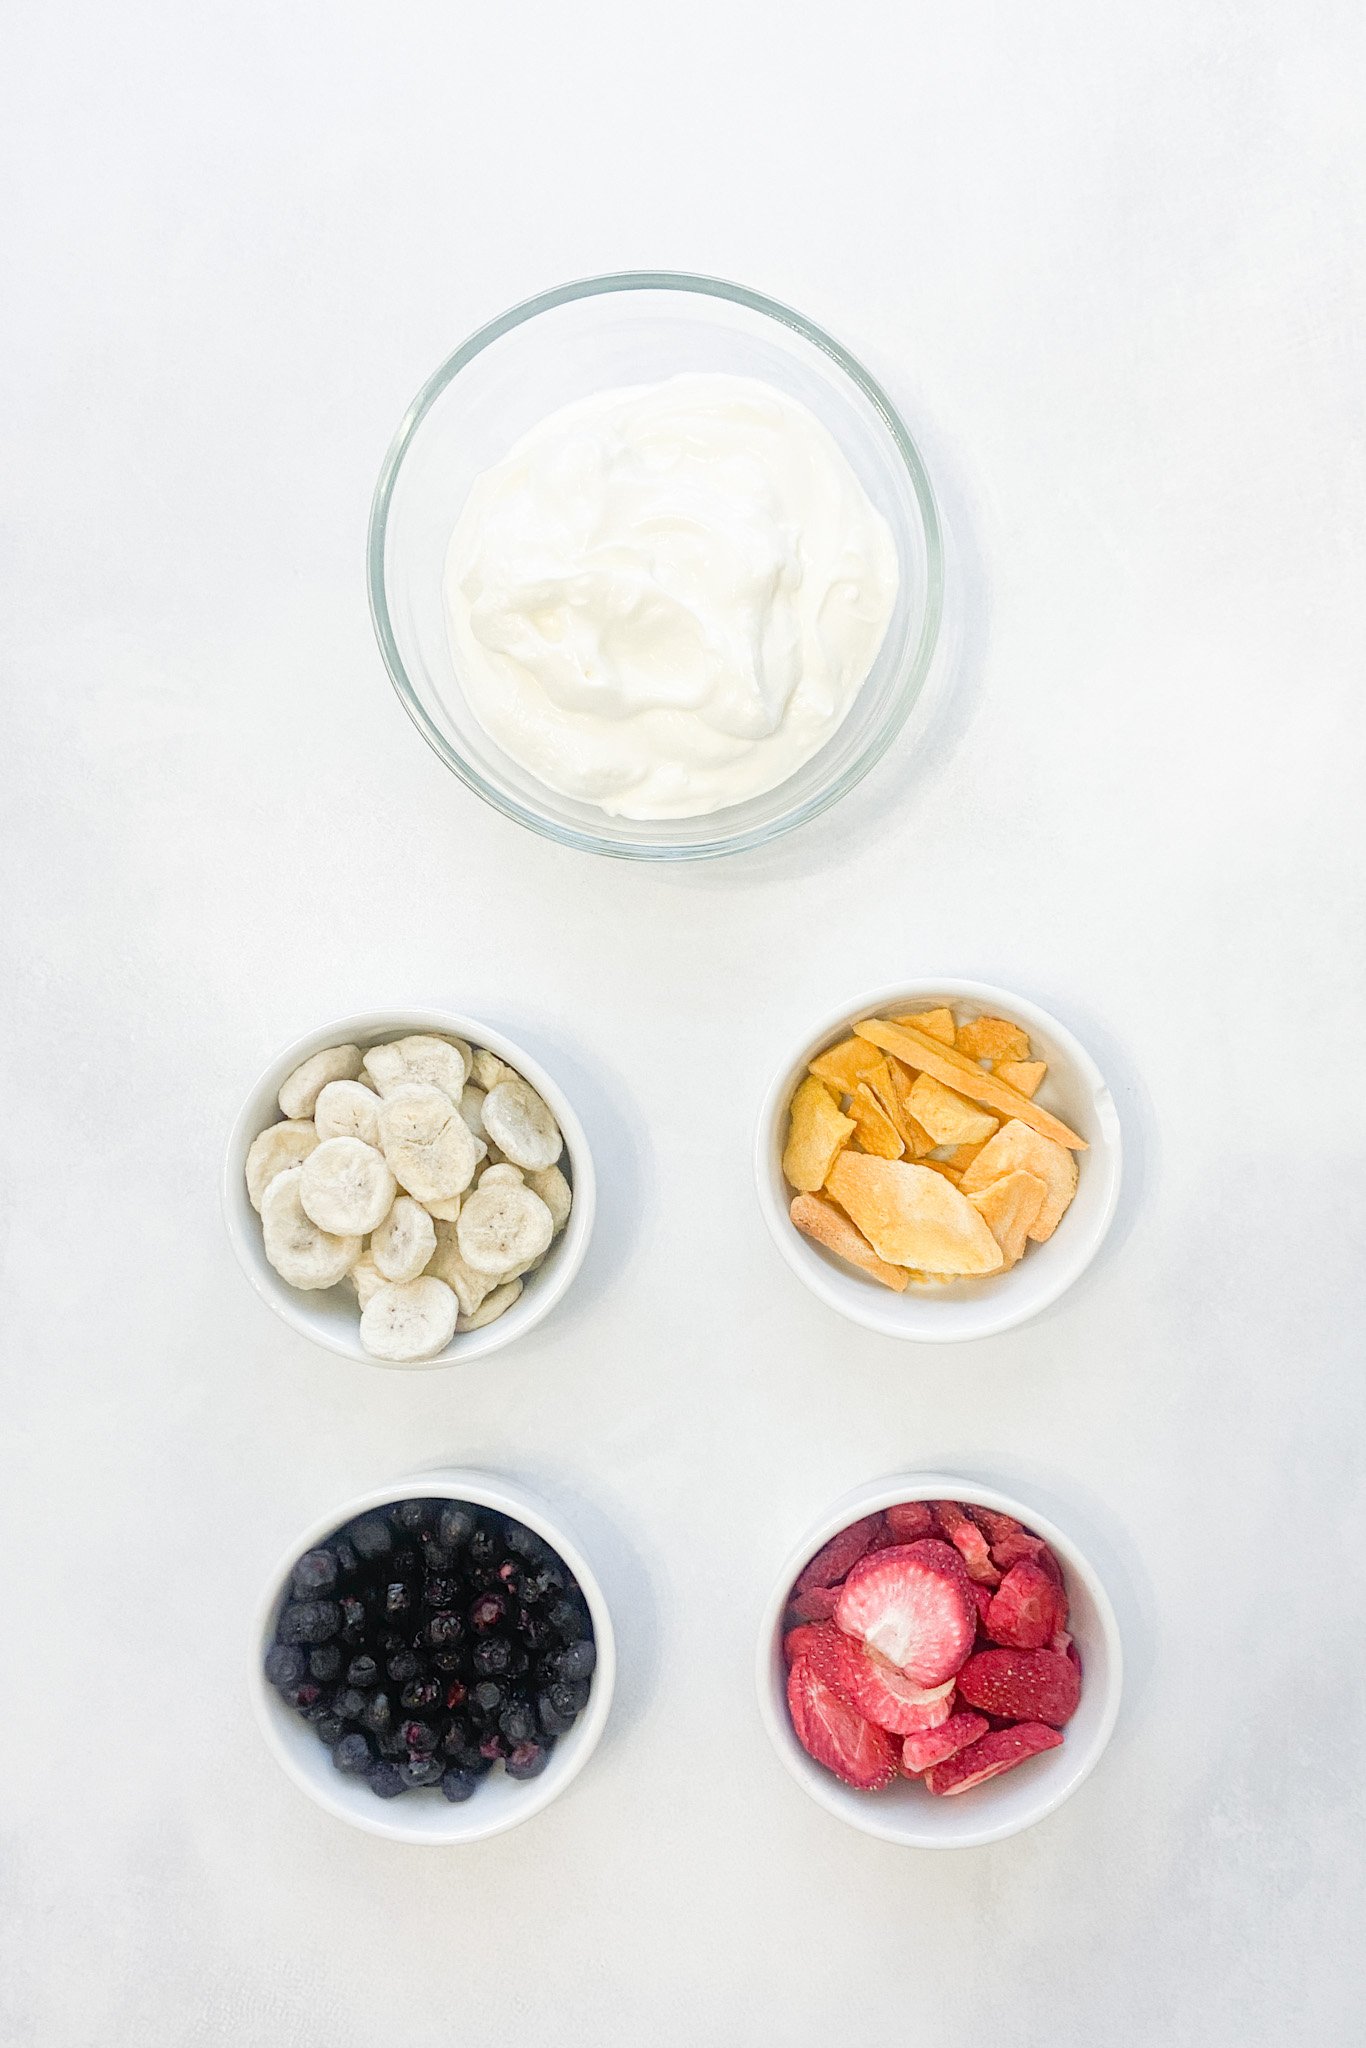 Ingredients to make yogurt melts